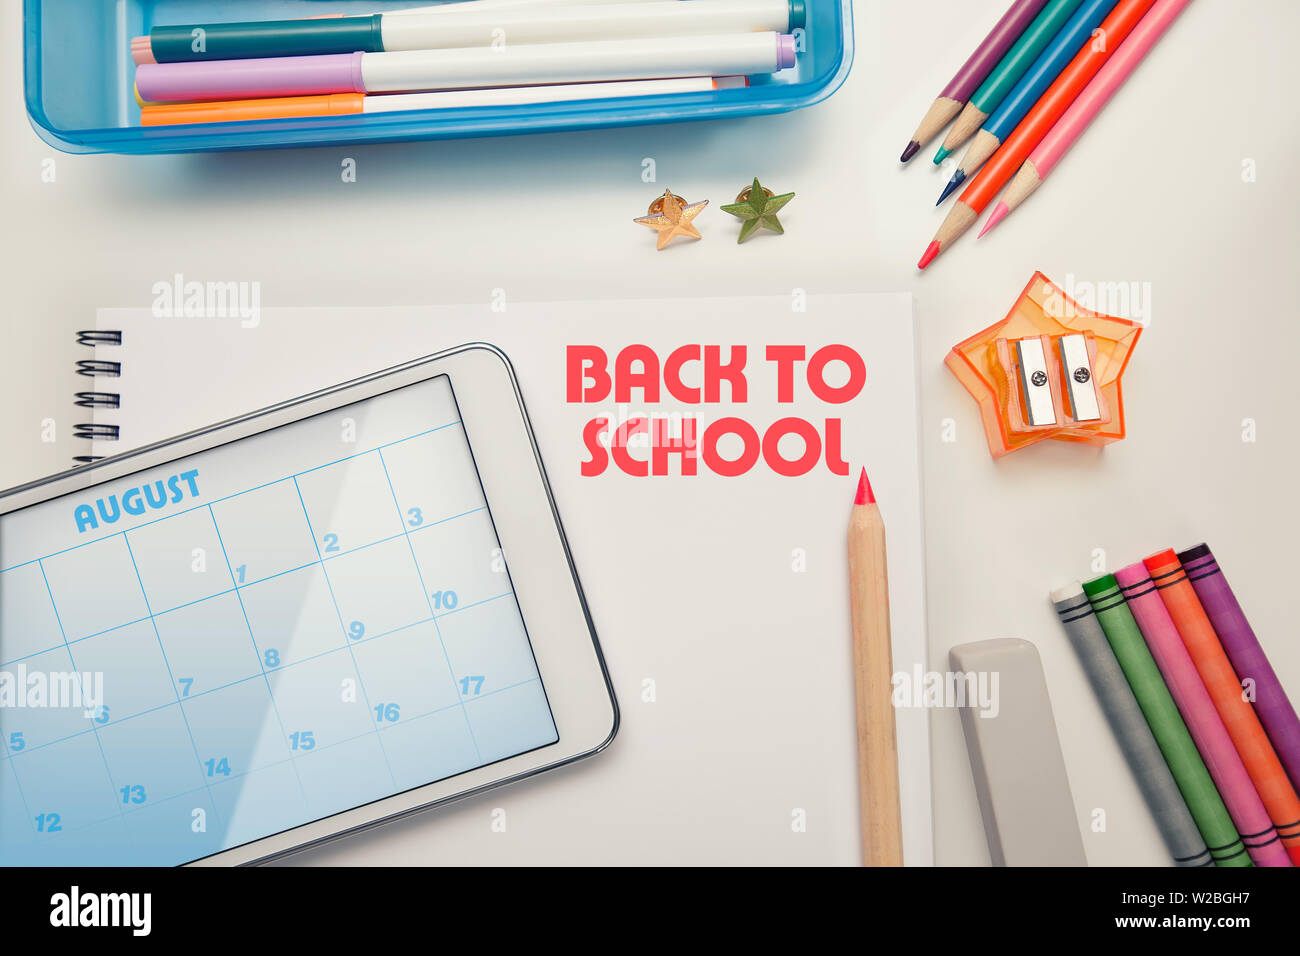 Zurück zu Schule liefert auf einem weißen Schreibtisch mit Tablet-PC oder Touchscreen, Wachsmalstifte, Buntstifte und Marker organisiert. Stockfoto